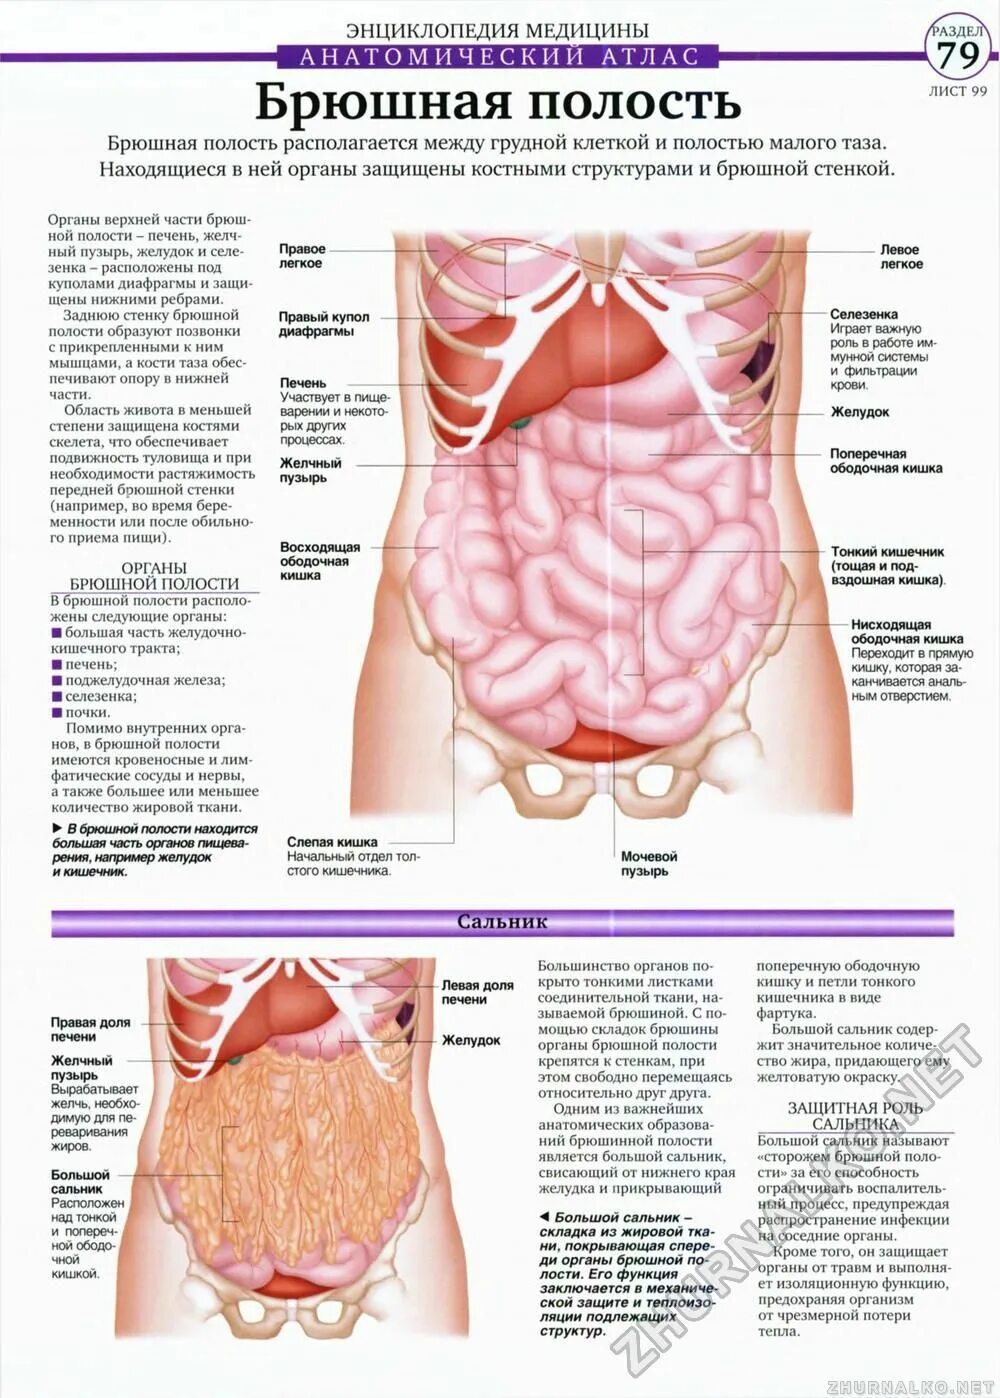 Органы живота. Расположение органов у человека в брюшной полости. Анатомия внутренних органов брюшной полости человека. Строение внутренних органов человека брюшная полость женщины. Внутренние органы человека схема расположения брюшной полости.